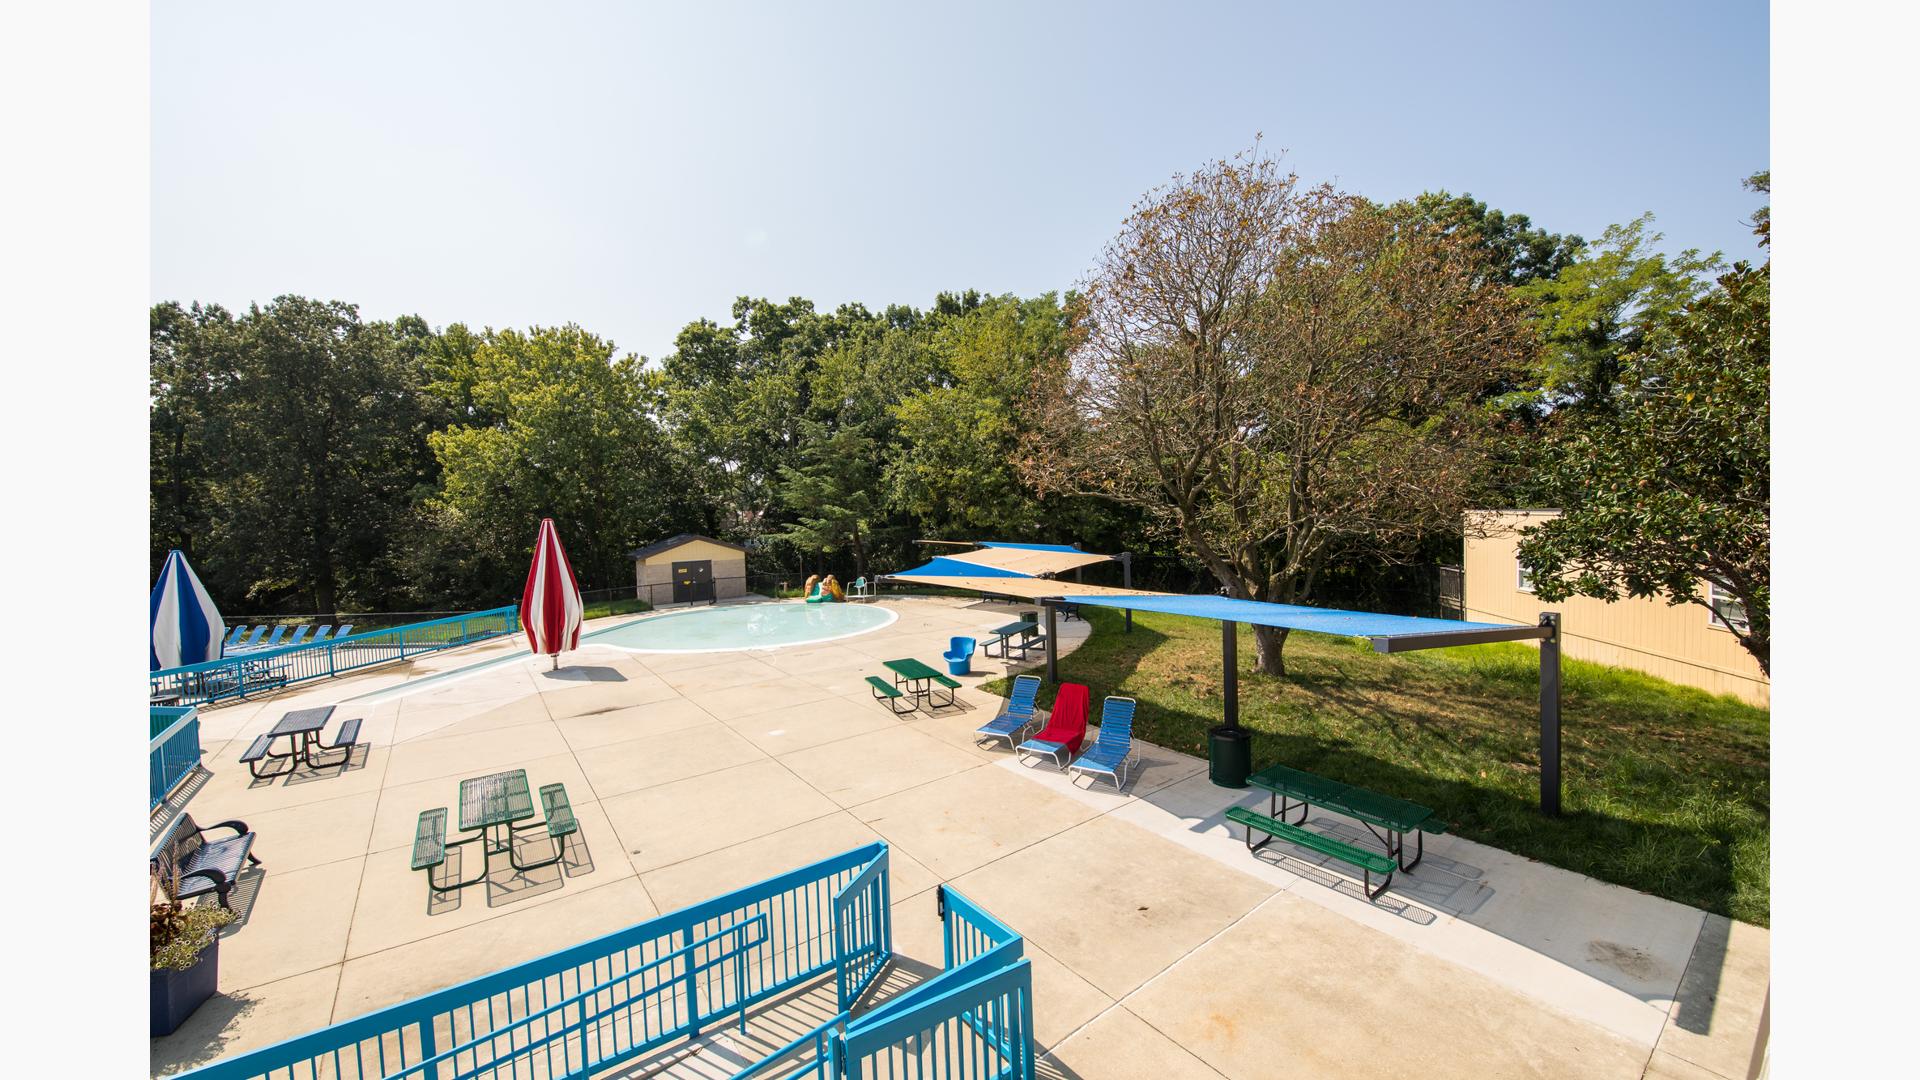 游泳池区域野餐桌、躺椅被棕褐色和蓝色的树冠阴影覆盖的结构。